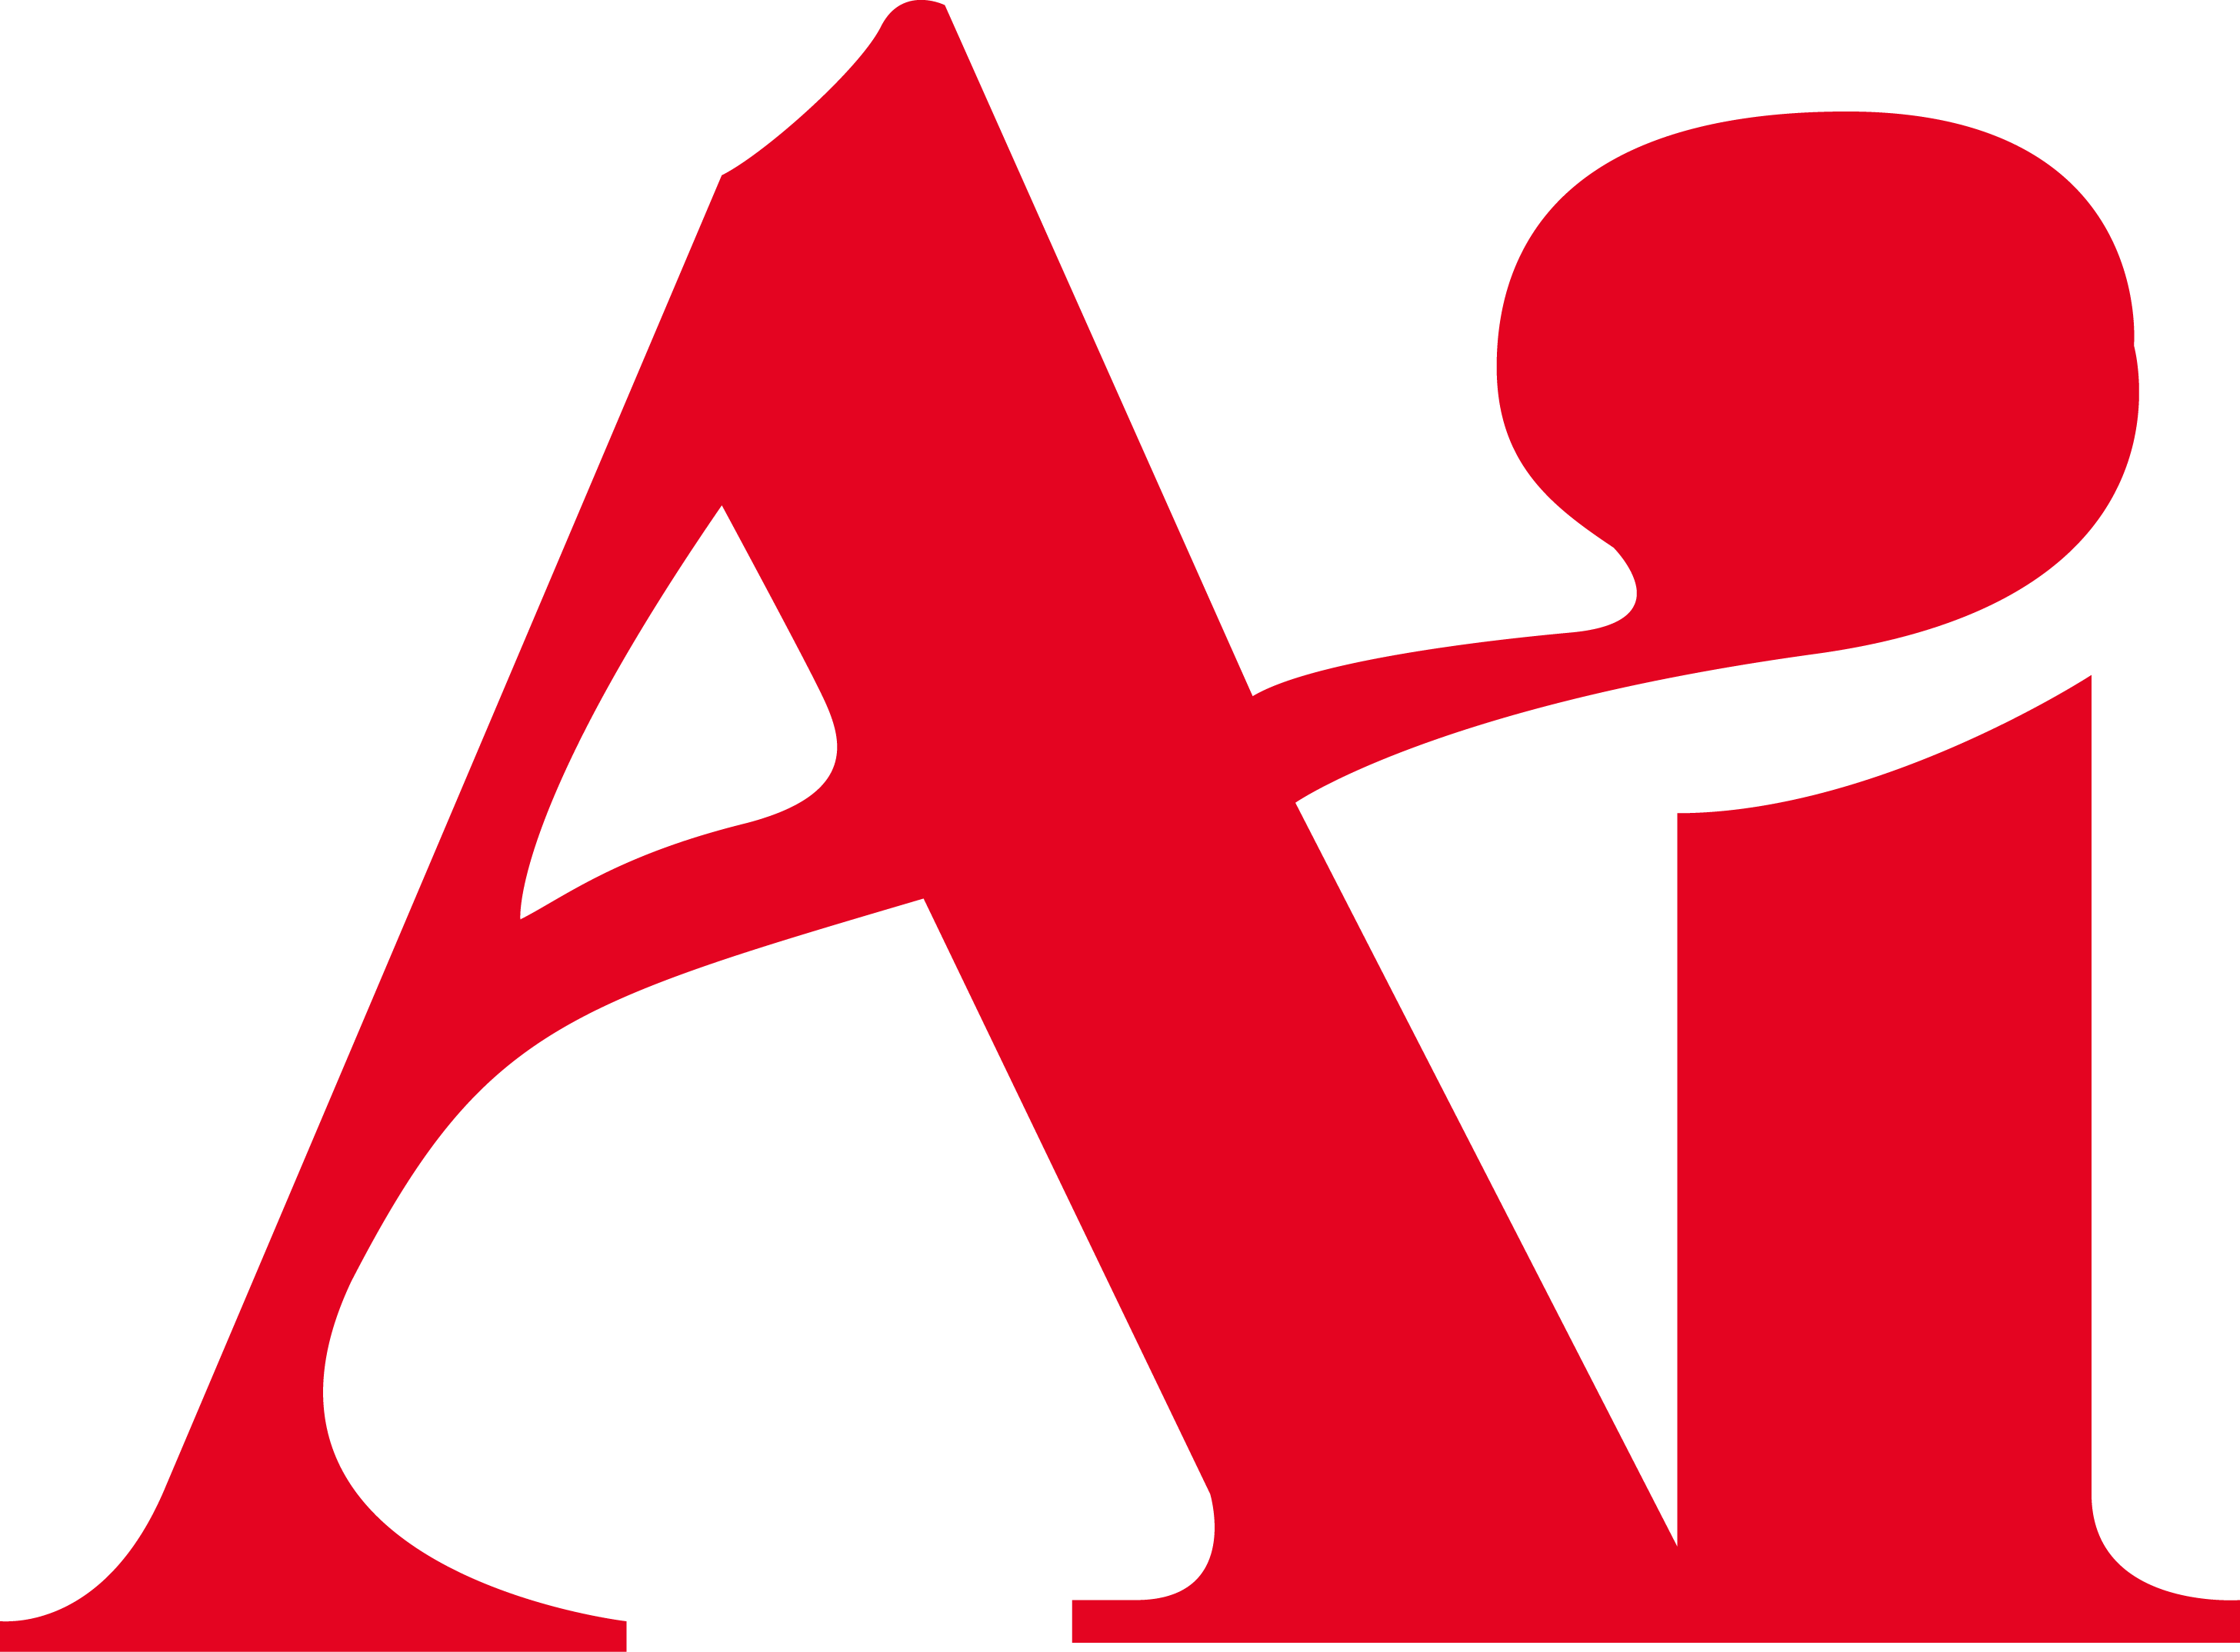 Ai Logo [The Art Institute] png